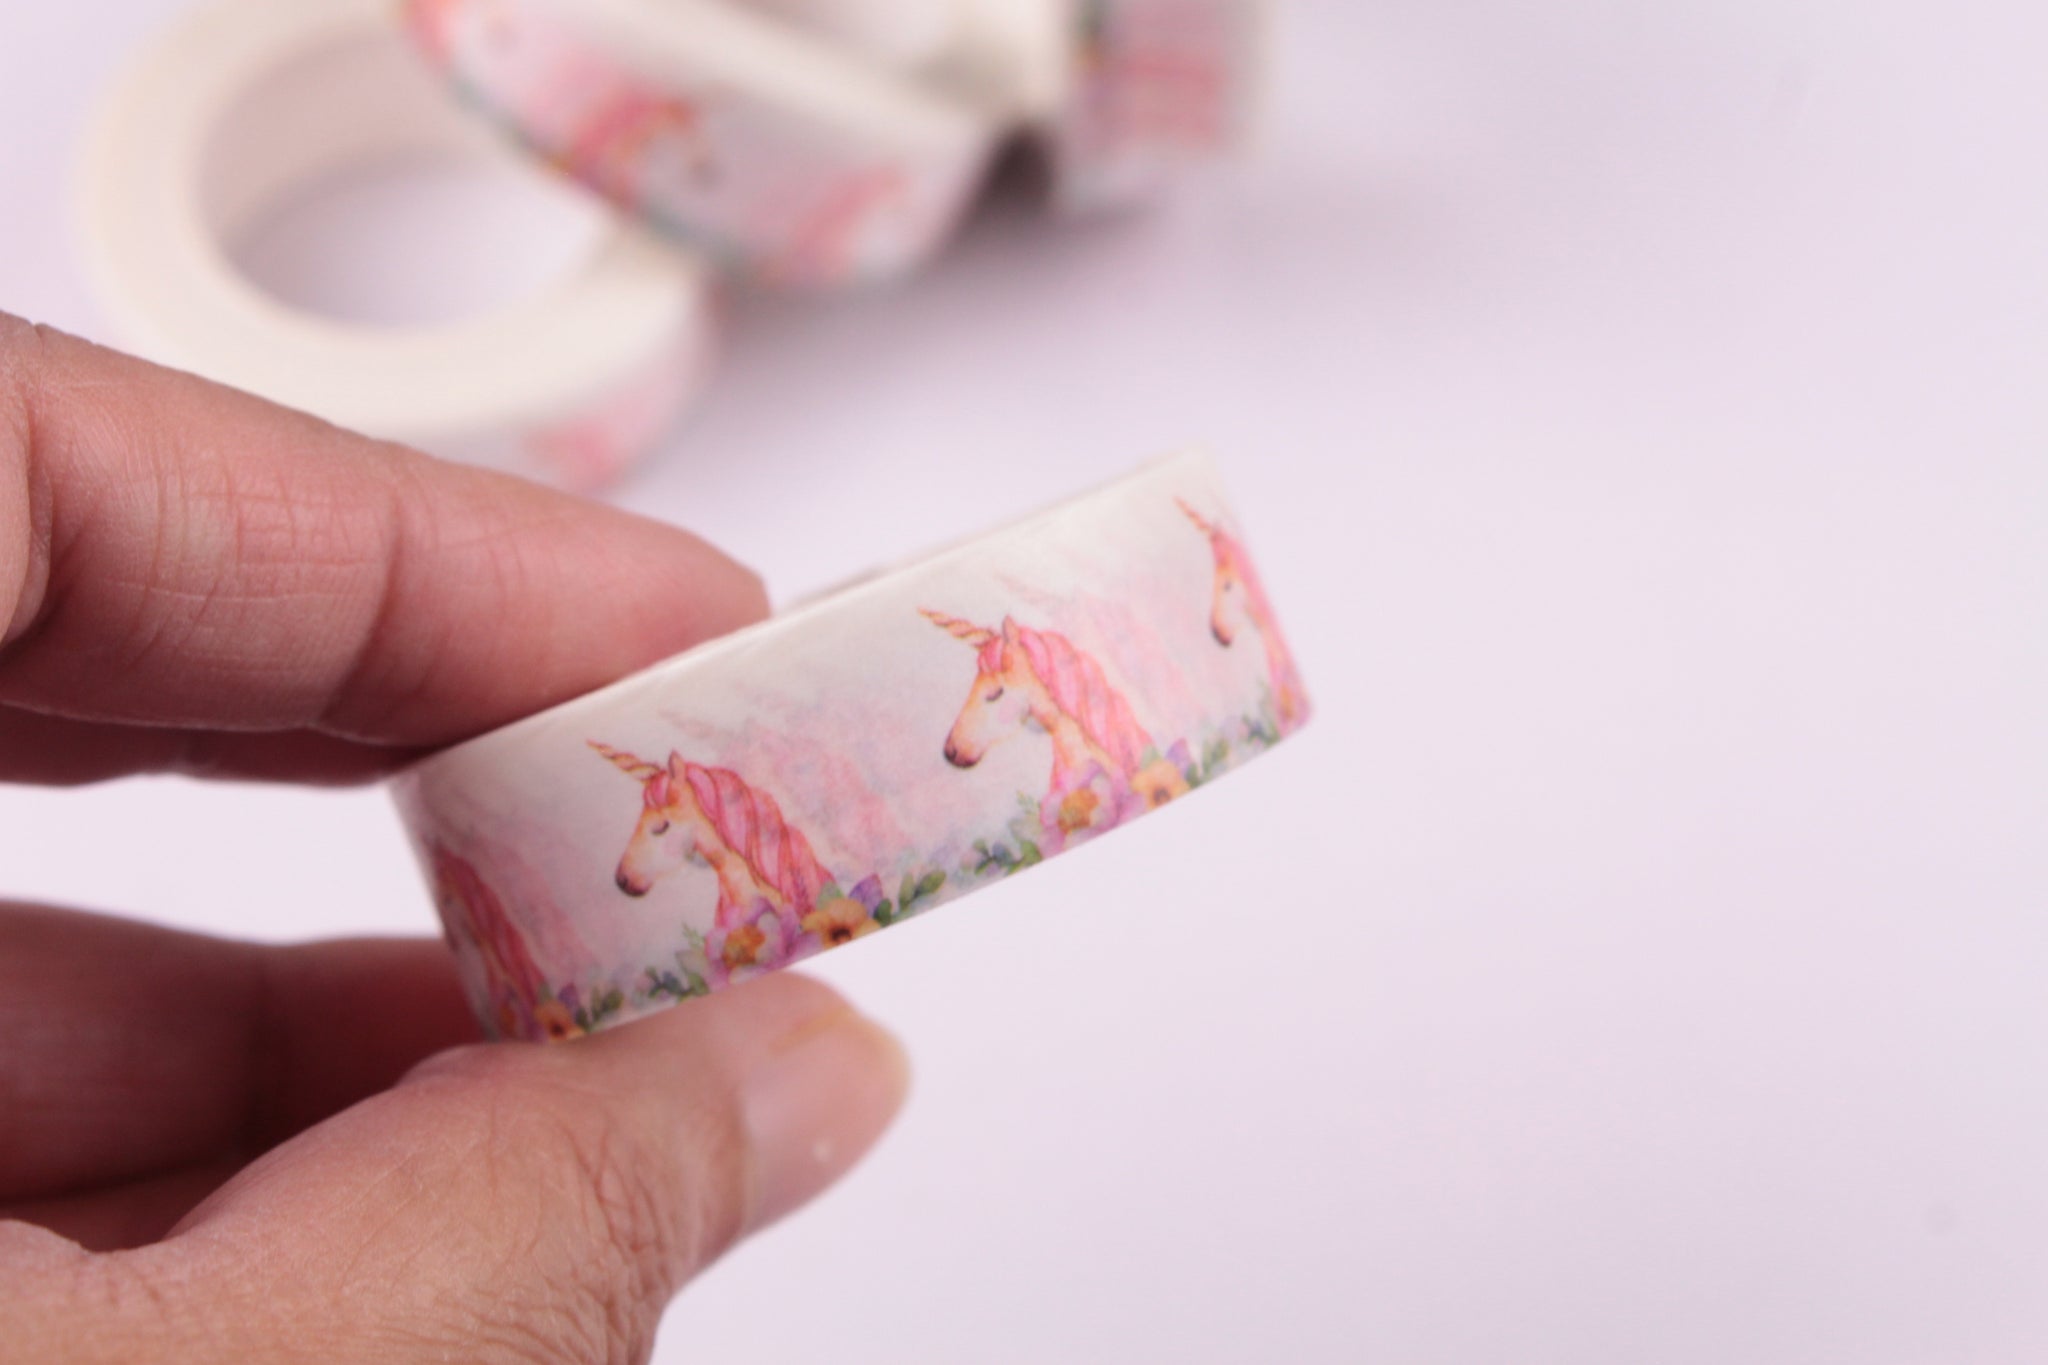 Unicorn Washi Tape, Unicorn and flowers washi tape